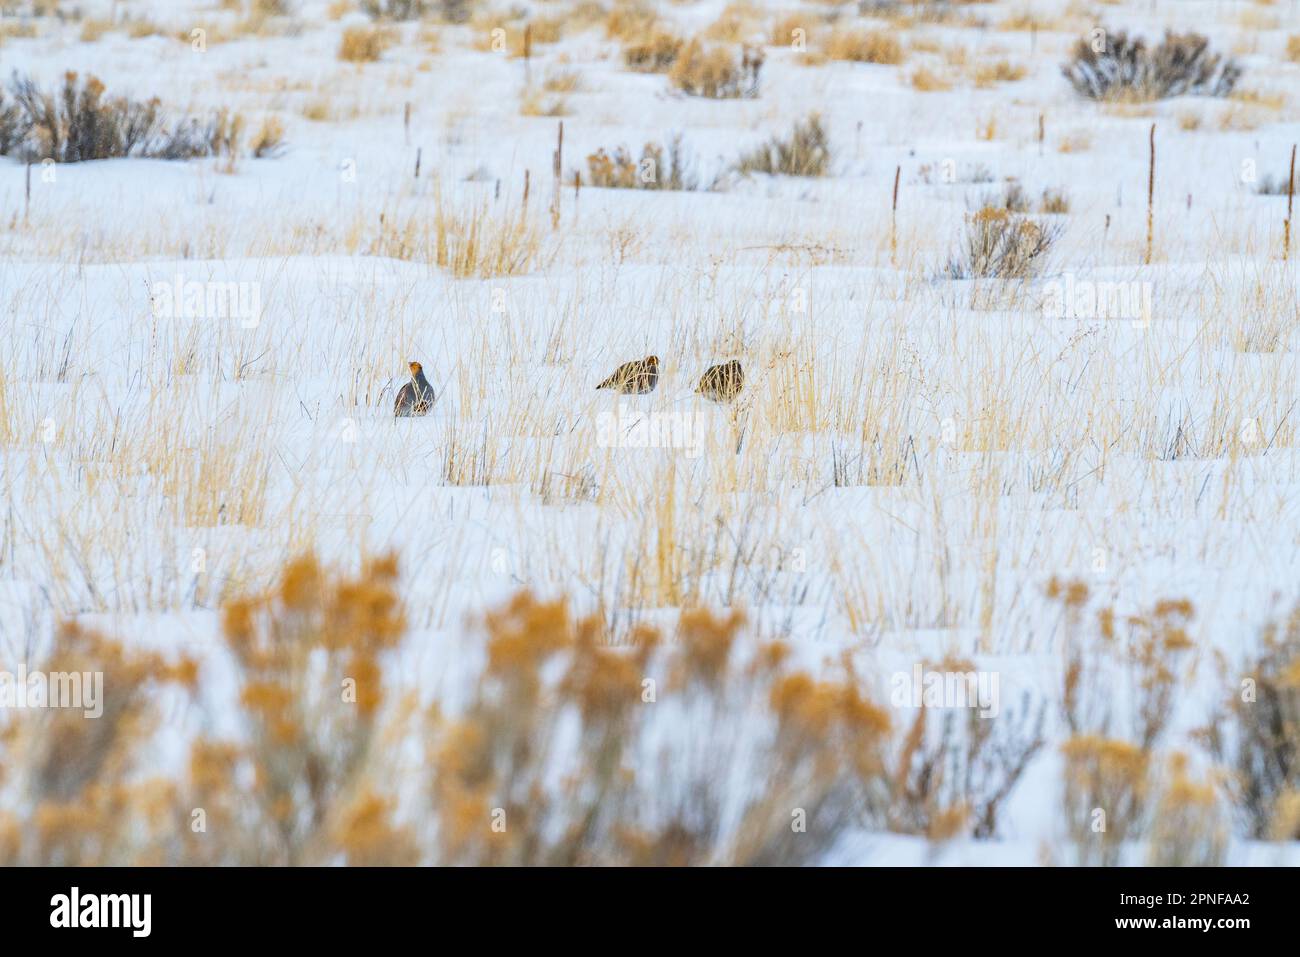 États-Unis, Idaho, Bellevue, Chukar partridges forage dans la neige Banque D'Images